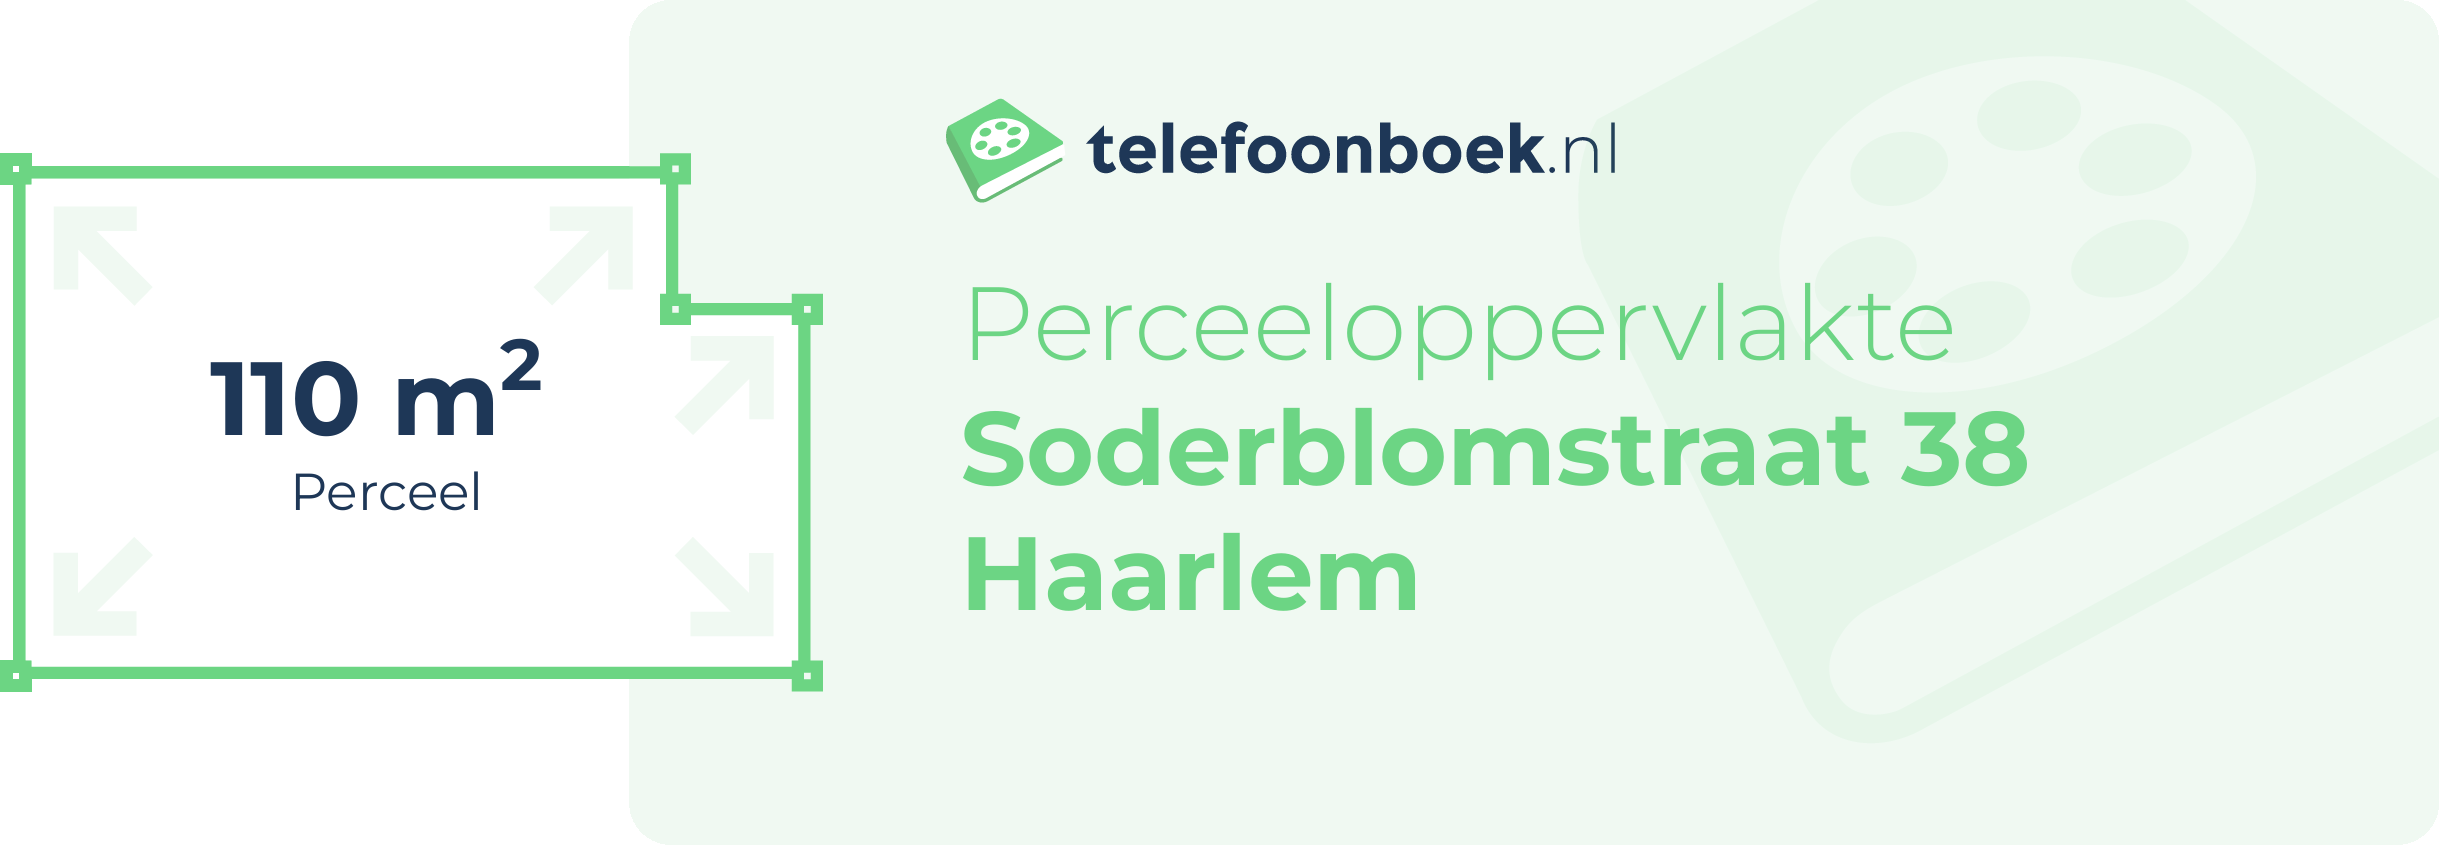 Perceeloppervlakte Soderblomstraat 38 Haarlem